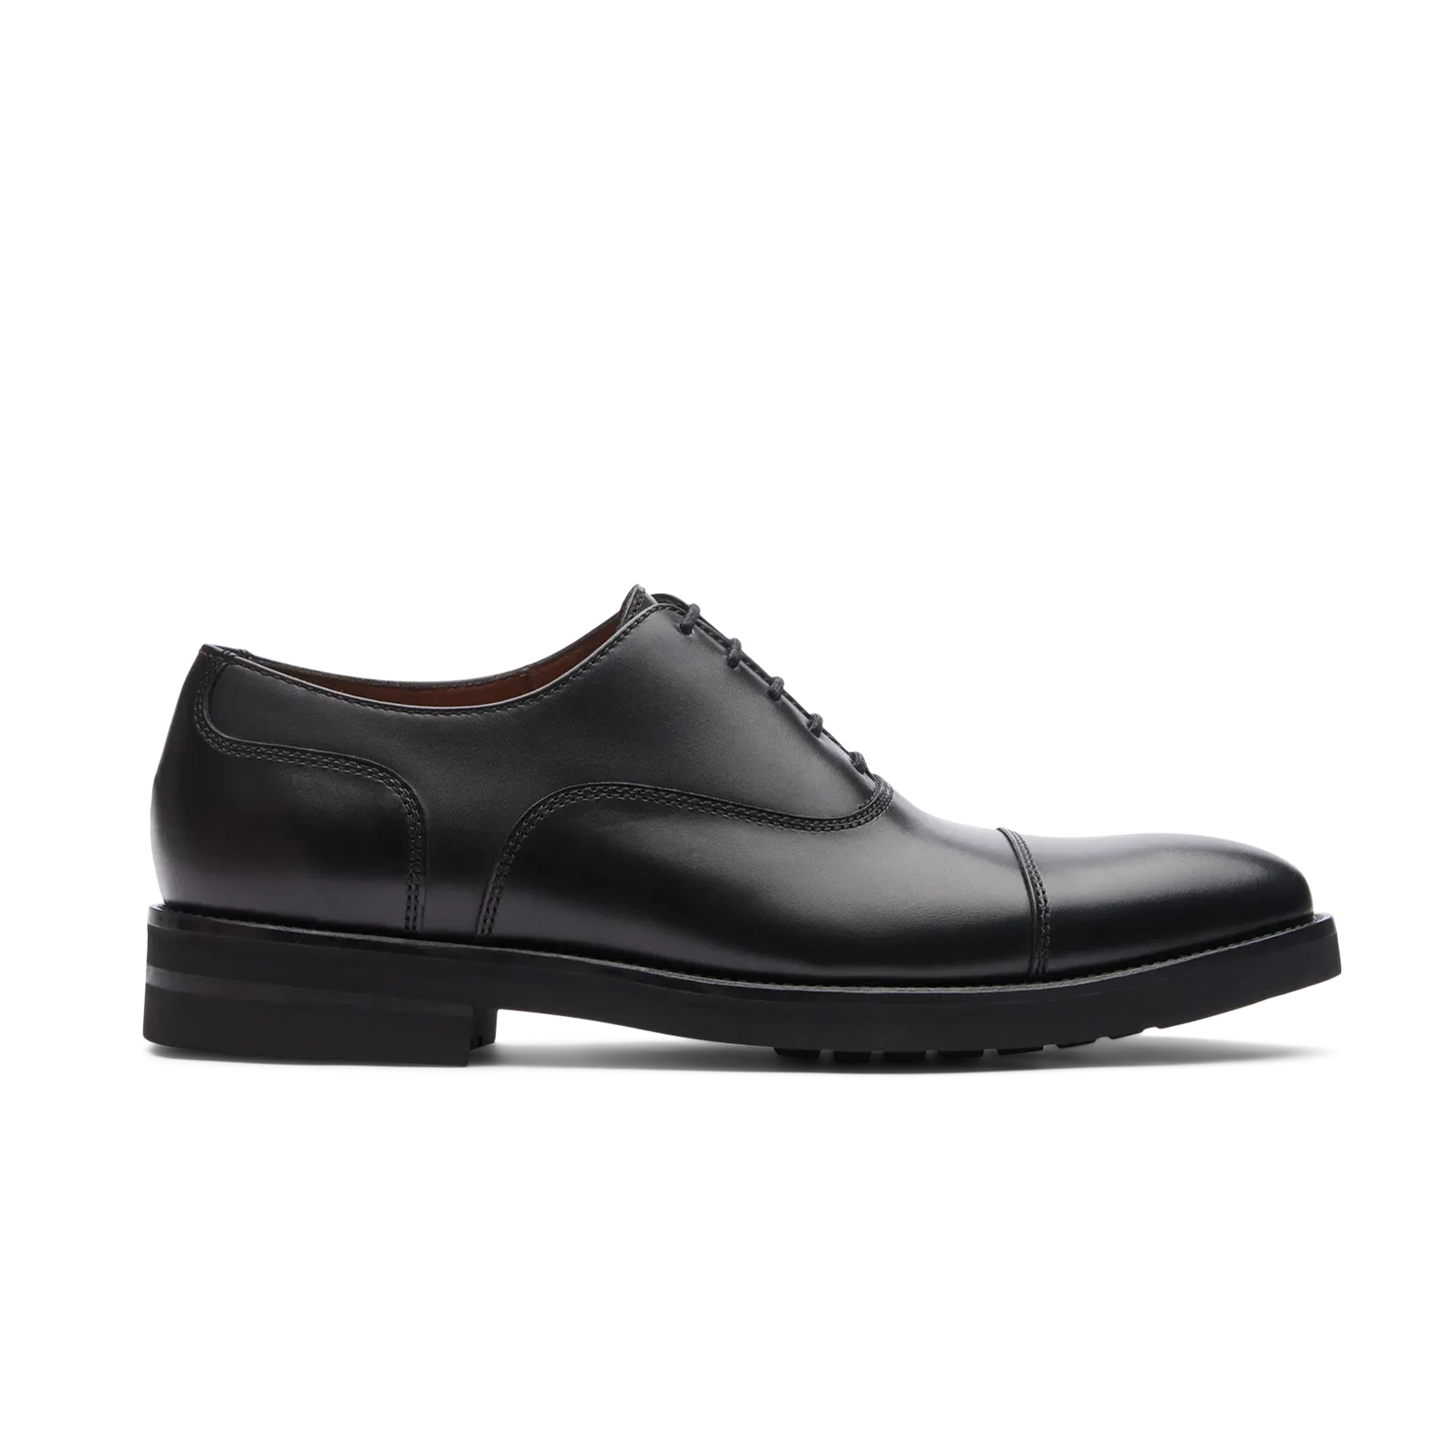 Zapatos Oxford De La Marca Lottusse Para Hombre Modelo Holborn Oxfords De Vacuno Cepillado En Color Negro